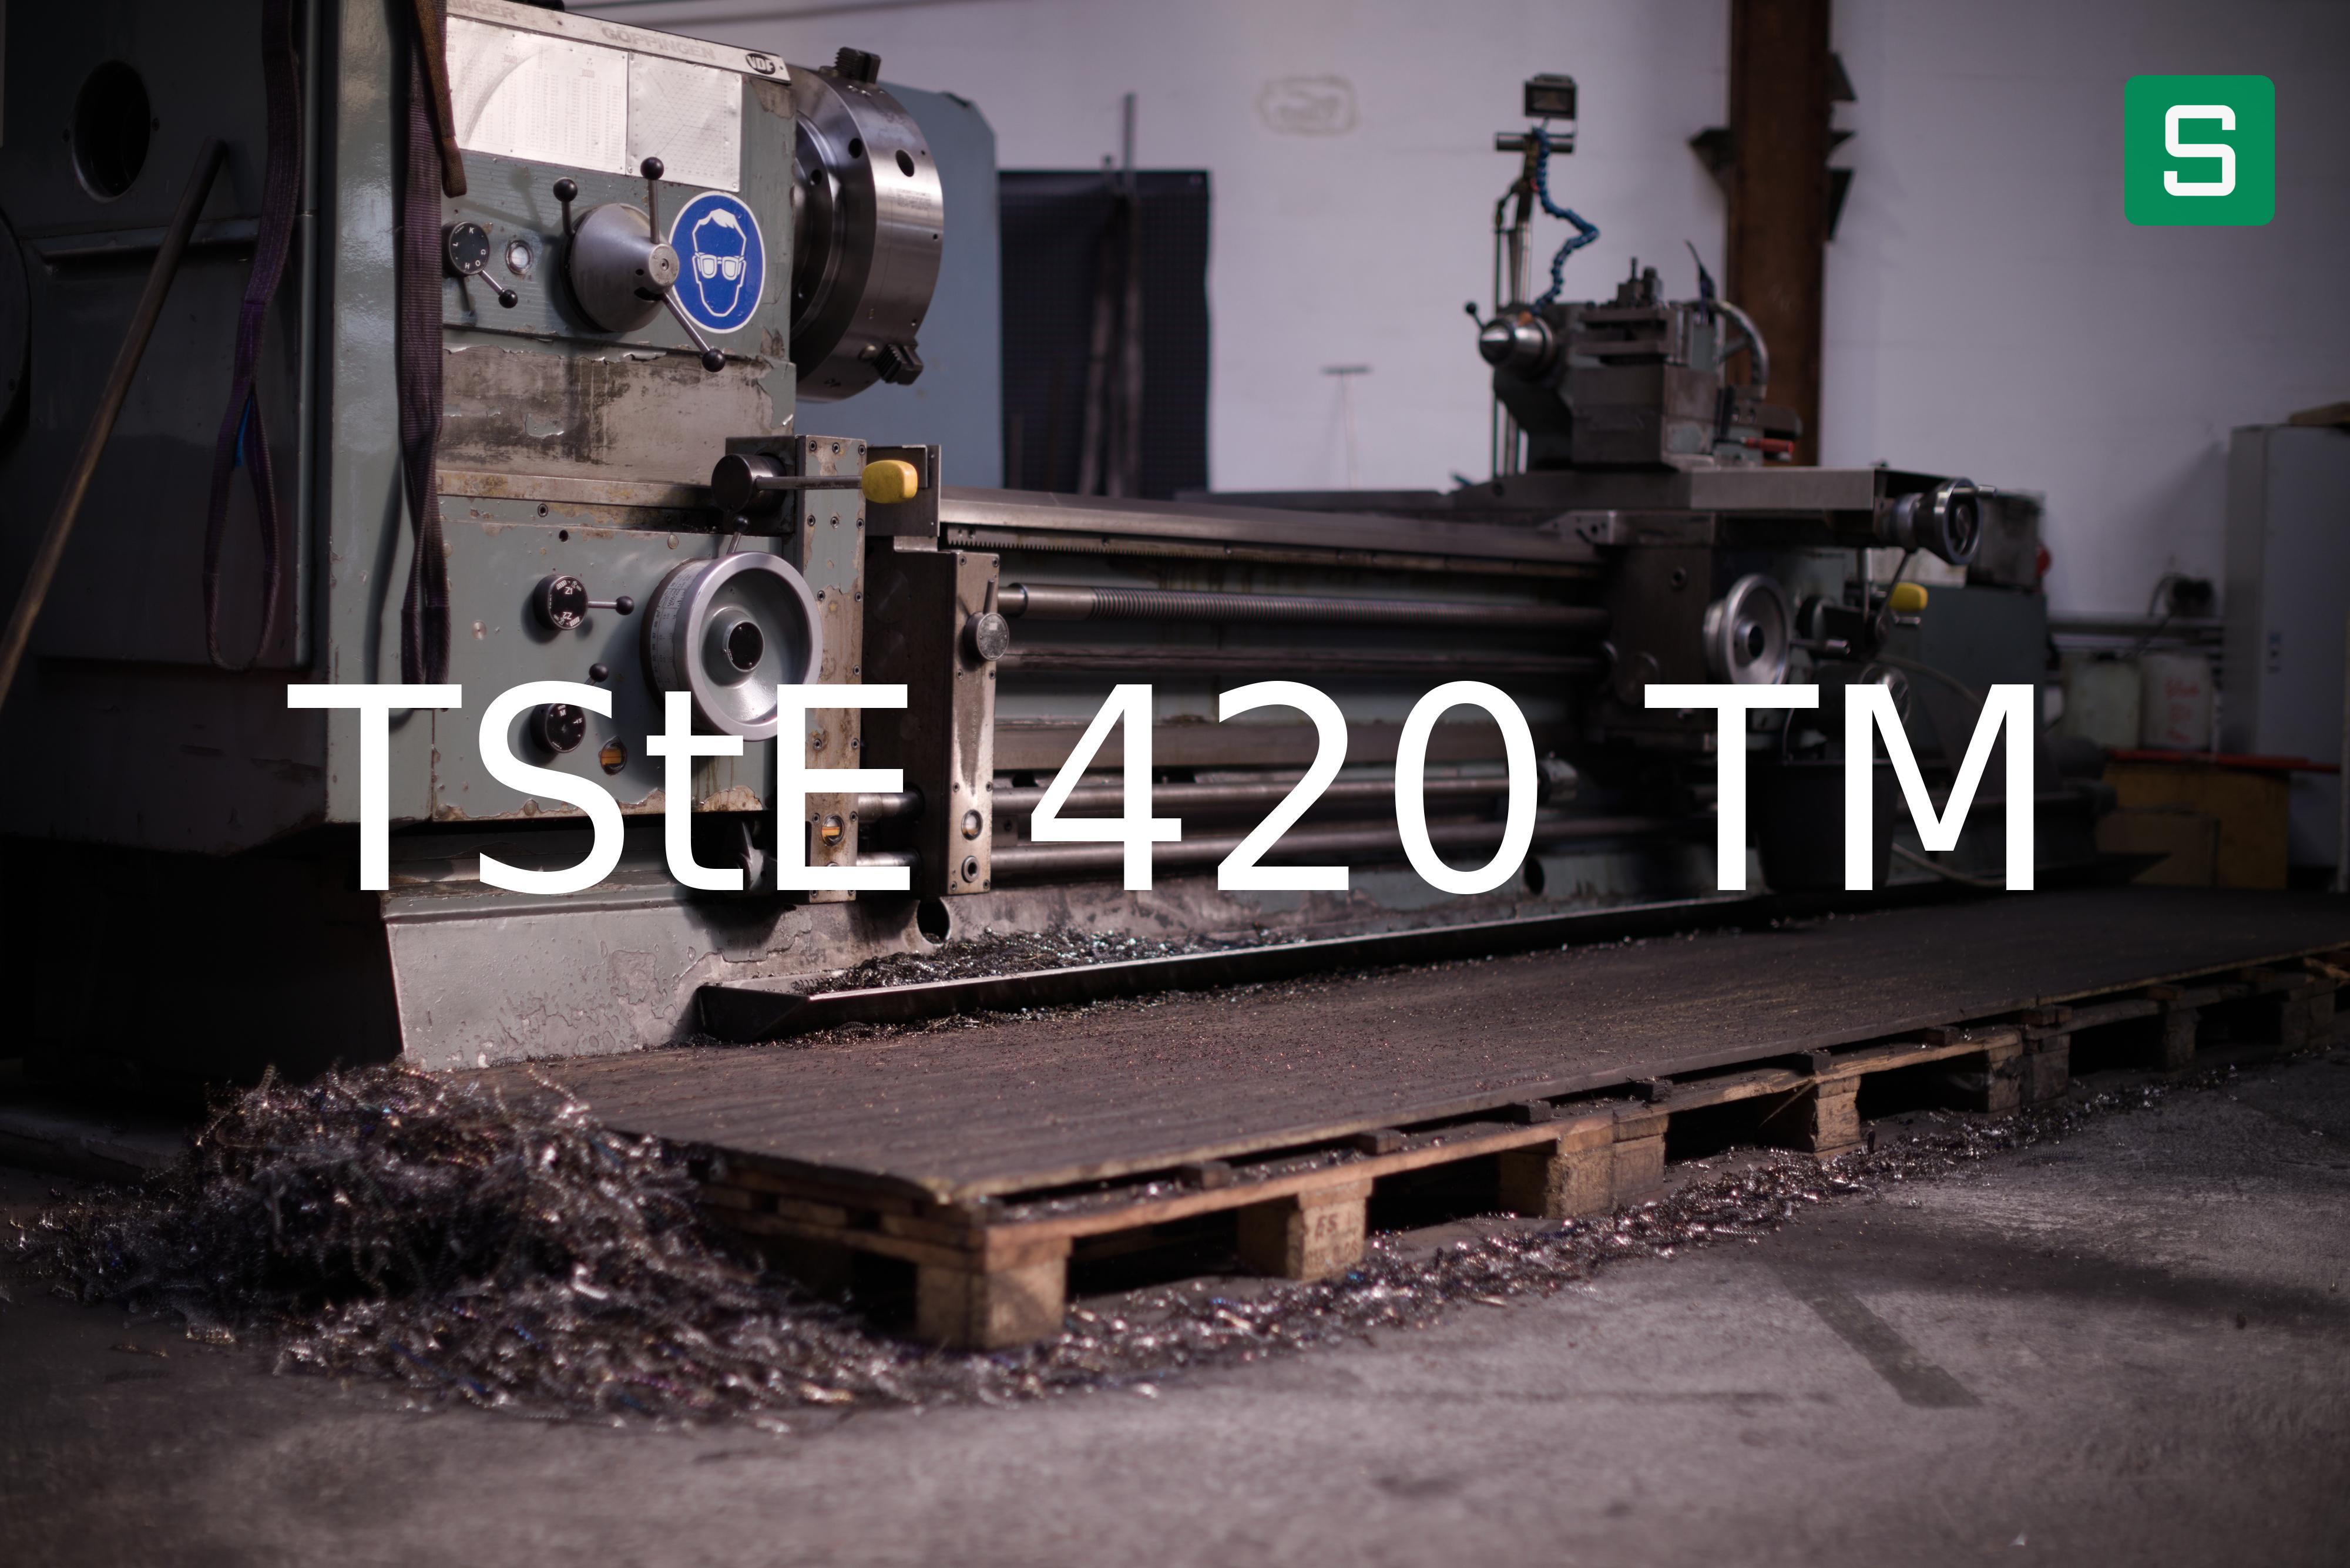 Steel Material: TStE 420 TM